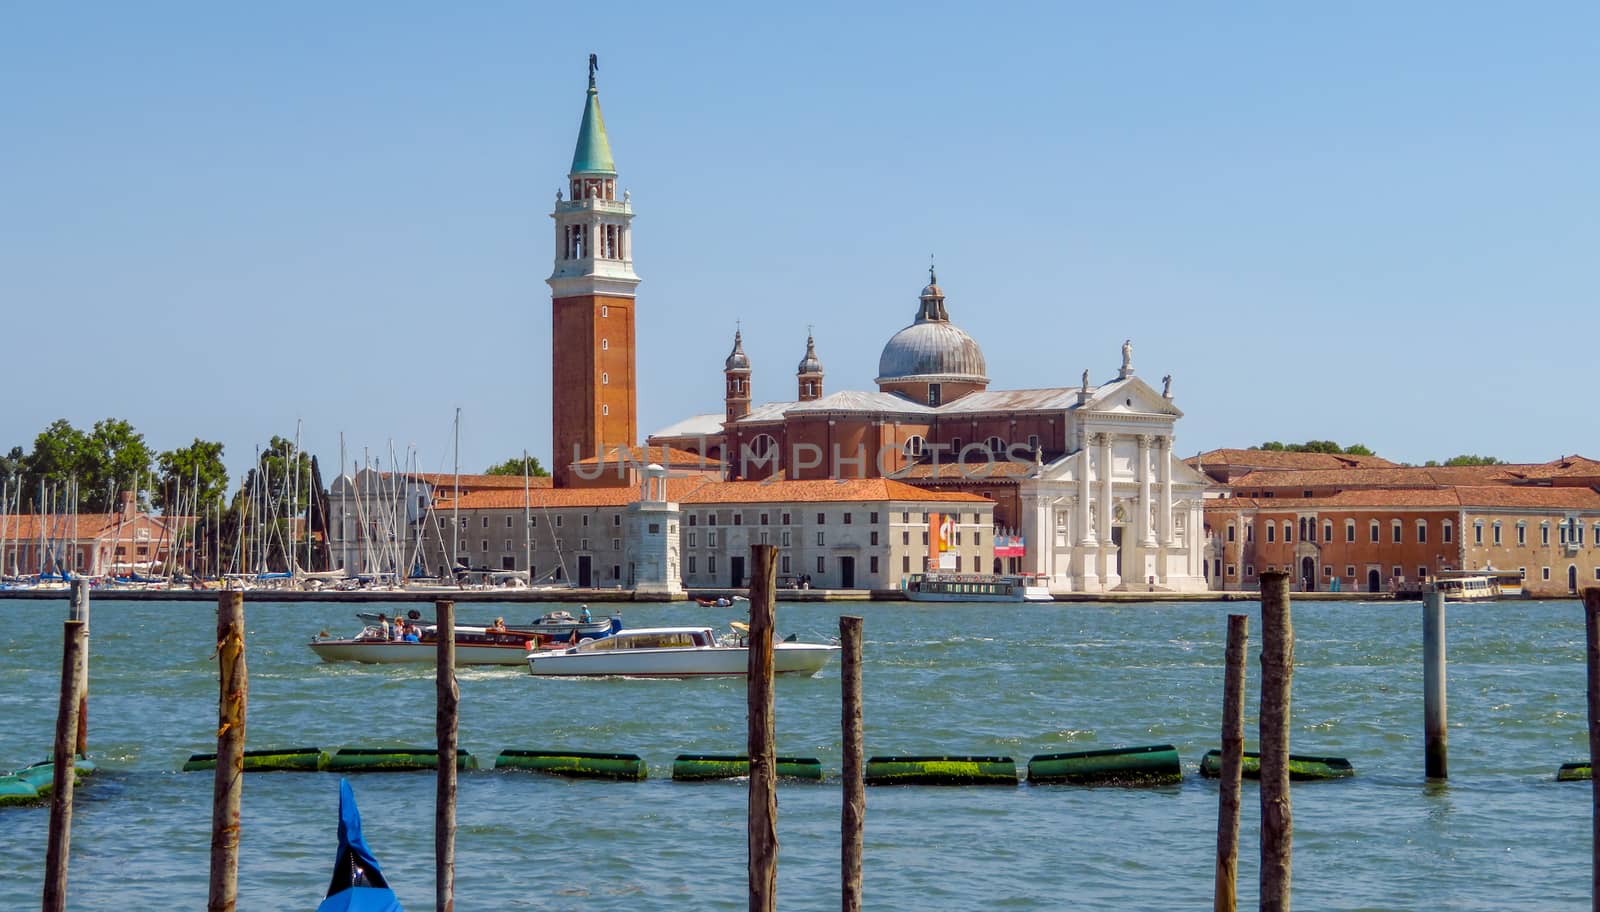 Venice - San Giorgio Maggiore Island by Venakr